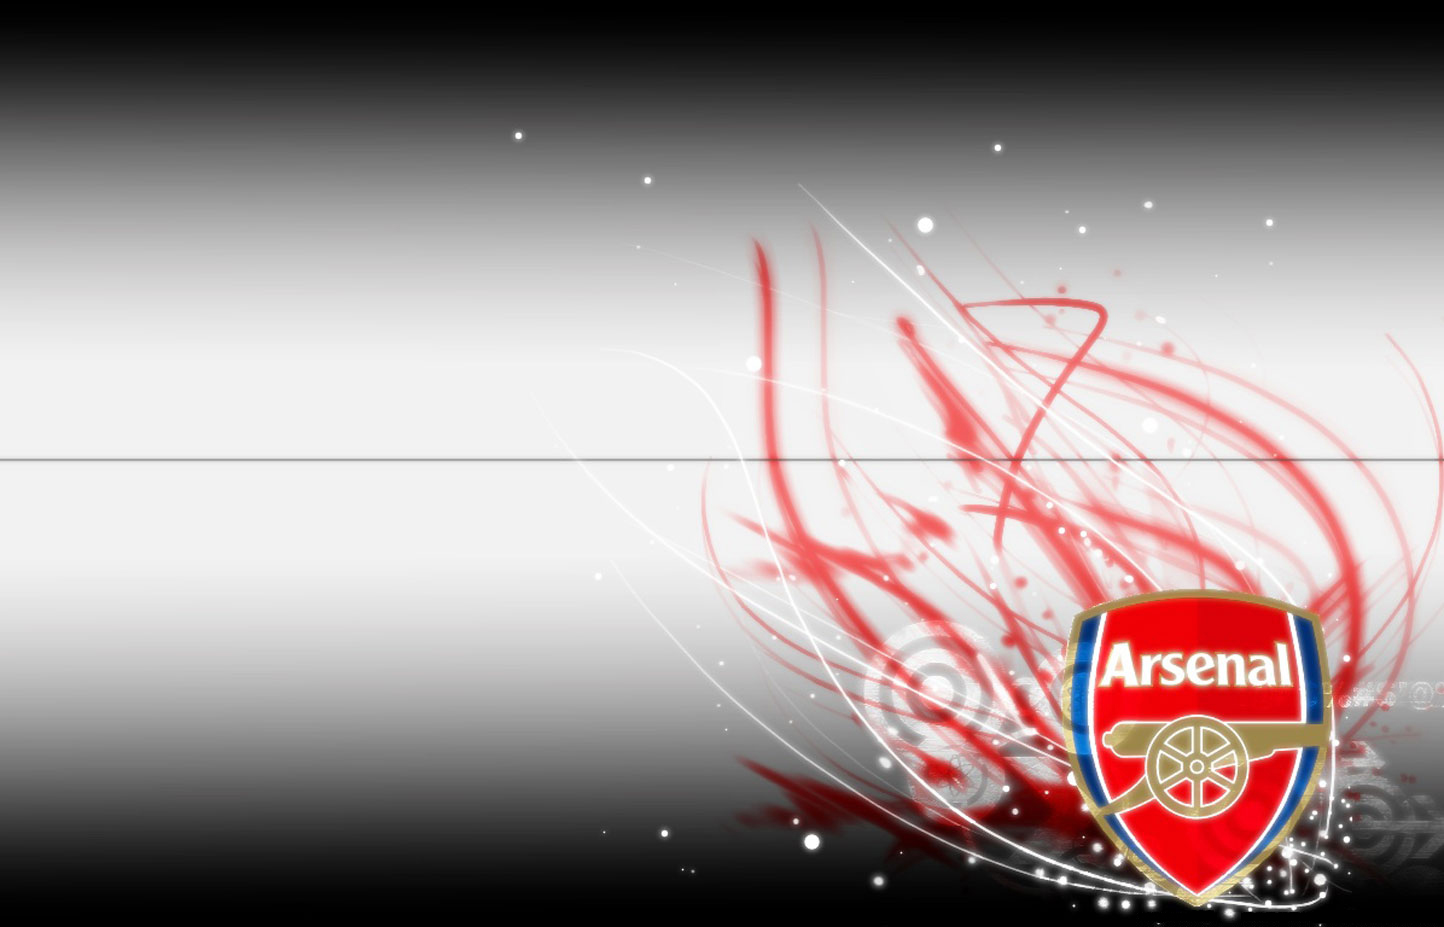 Arsenal FC Logo 2013 HD Wallpaper for Desktop 1444x927